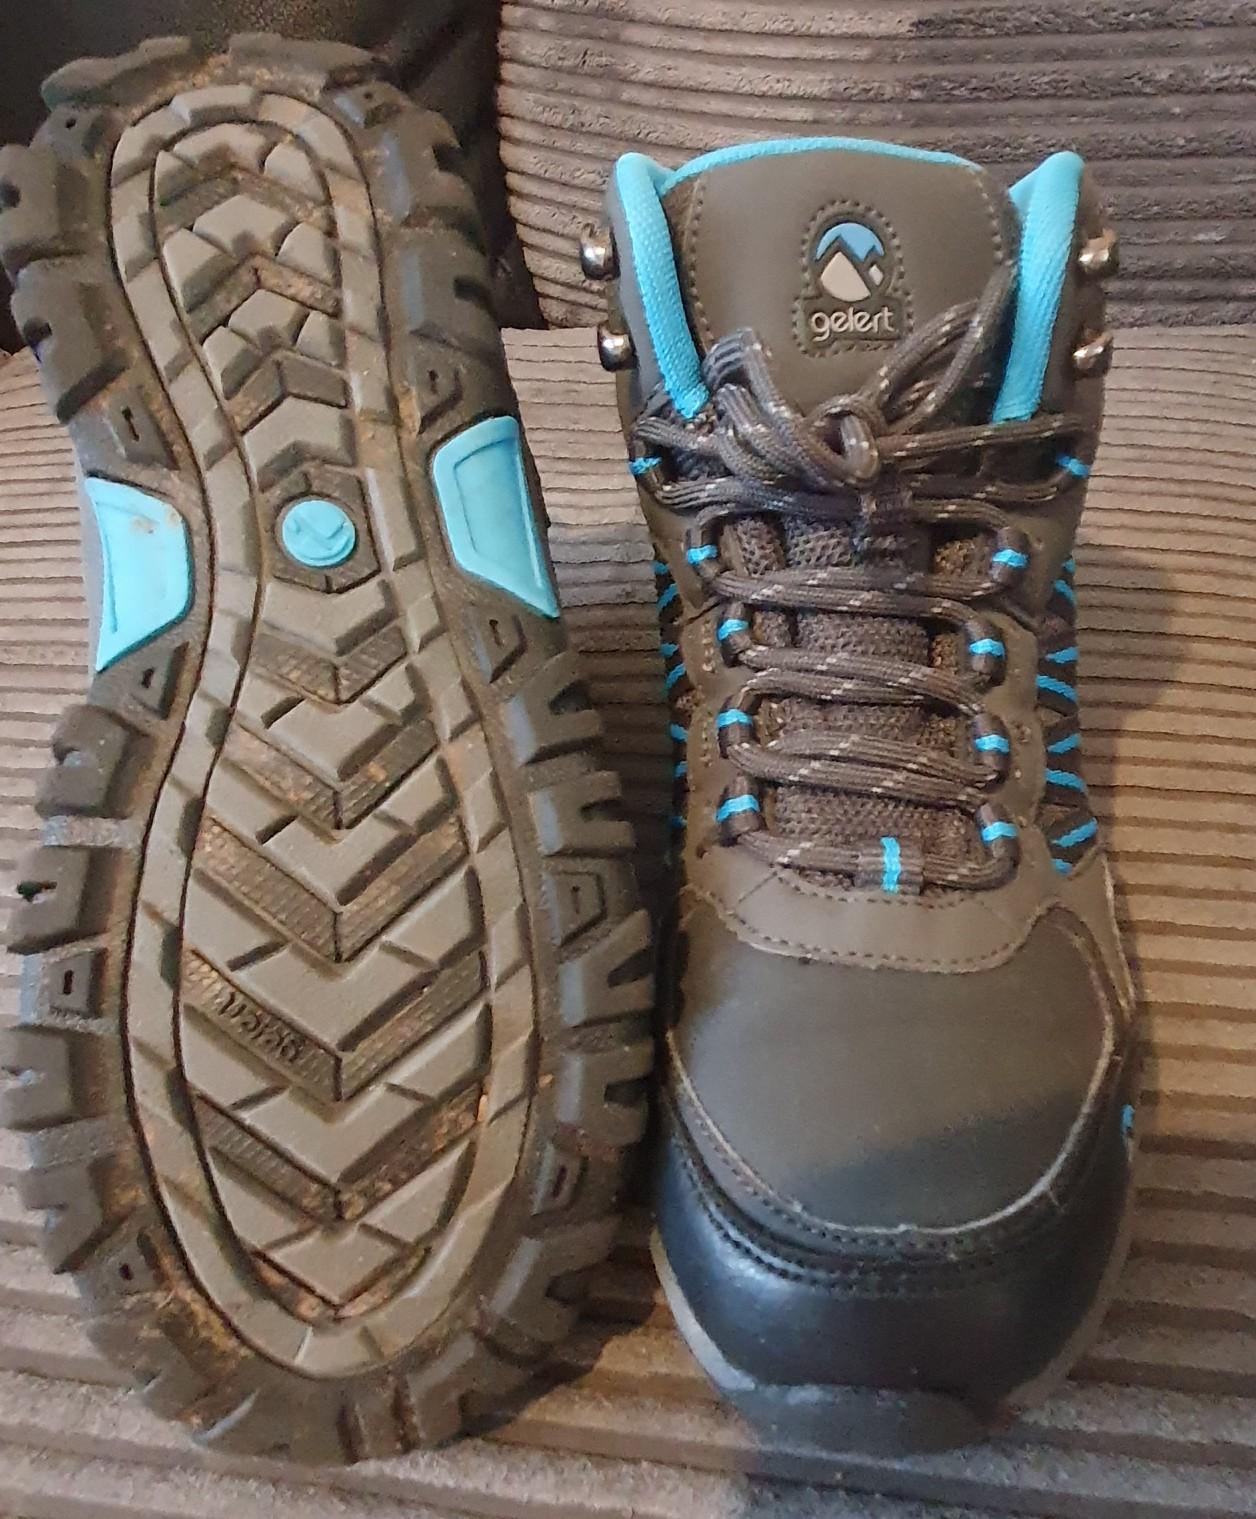 gelert hiking boots